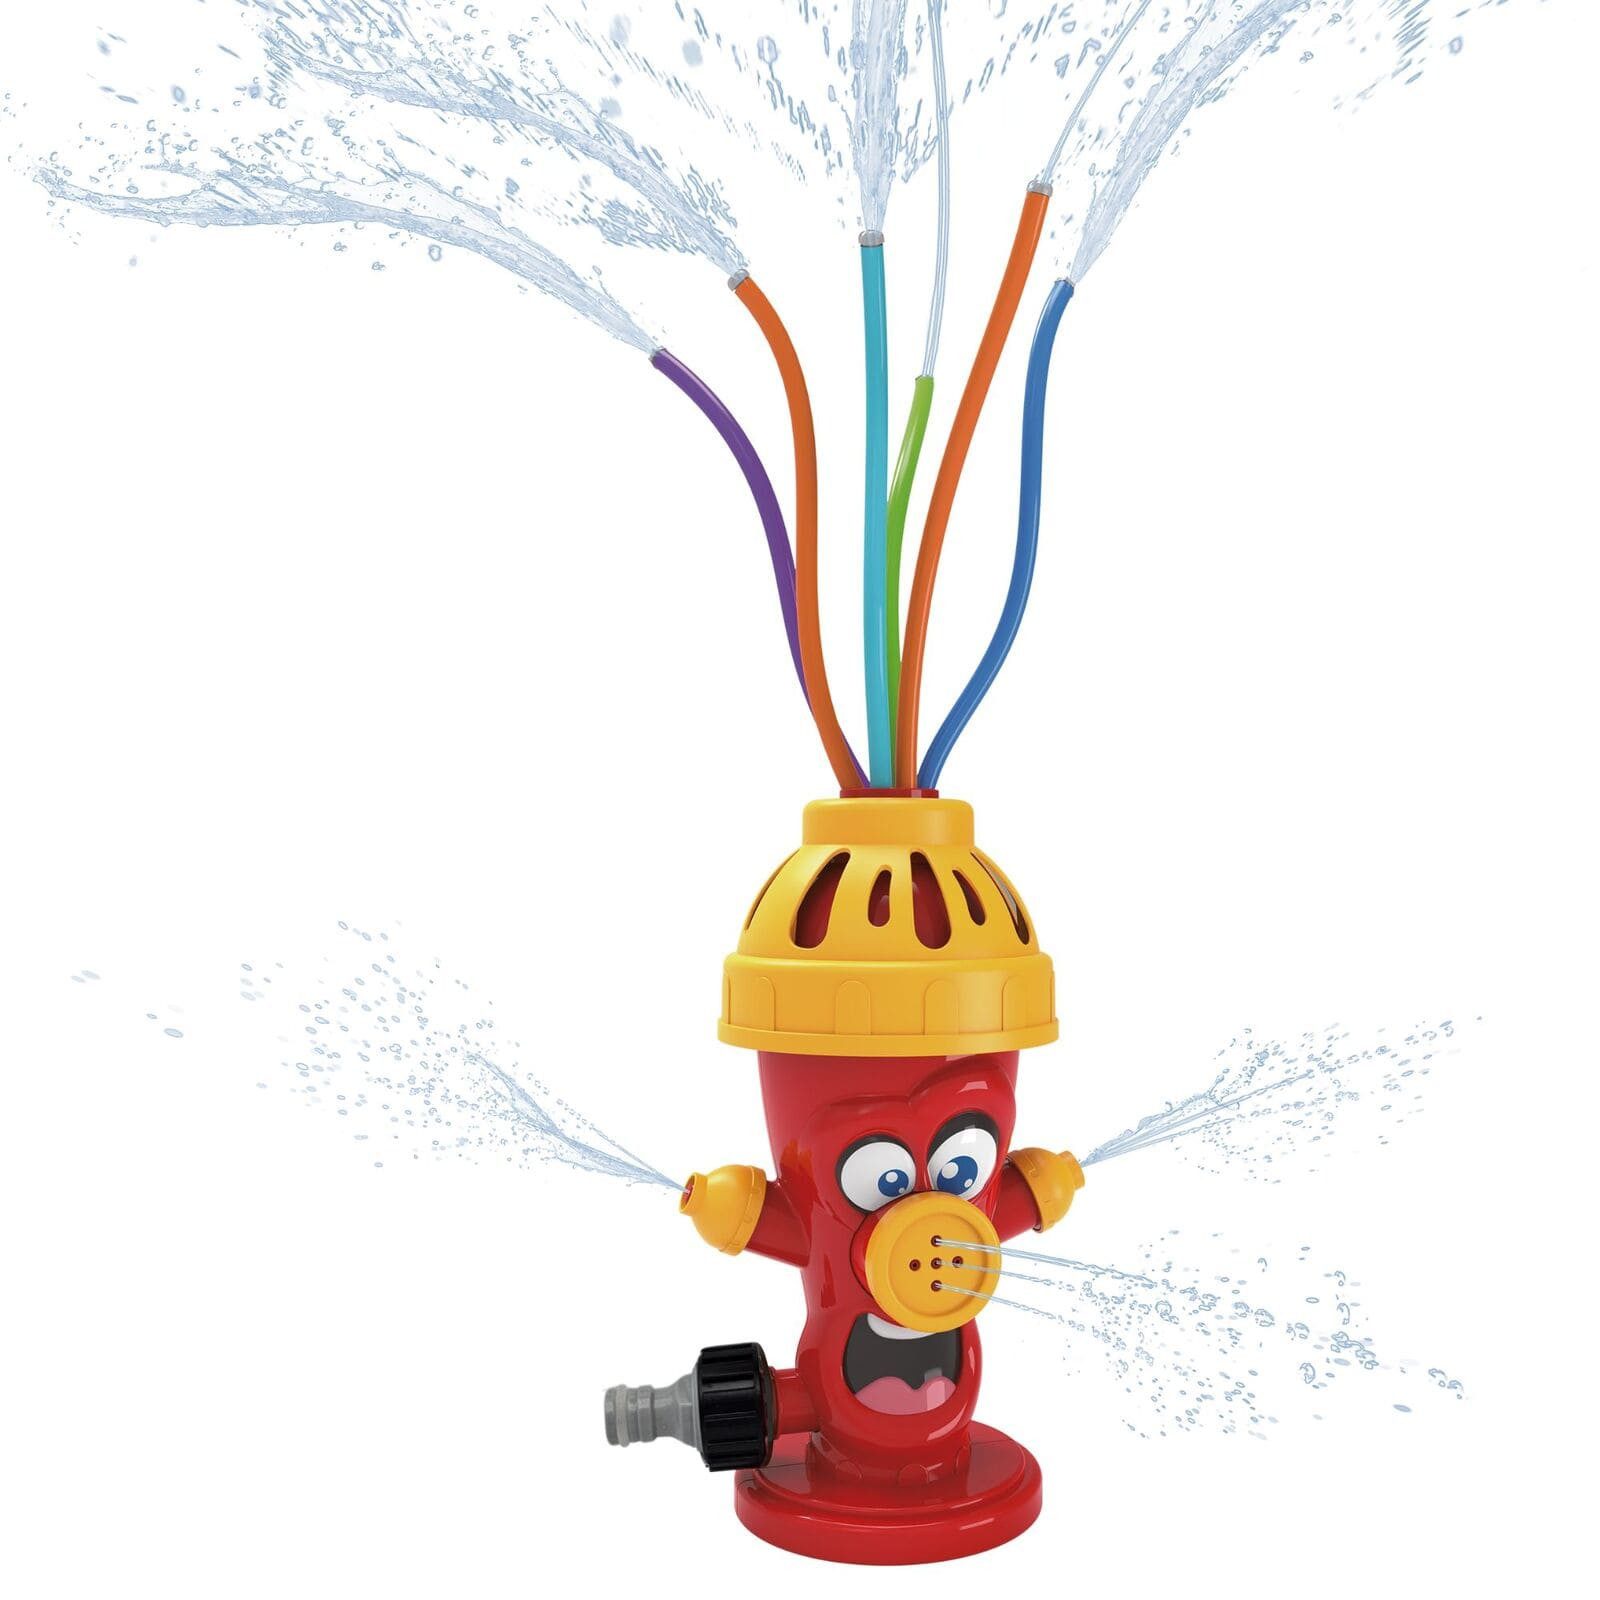 alldoro Spiel-Wassersprenkler 60215, witziger Hydrant, Outdoorspielzeug für spritzige Abkühlung im Sommer